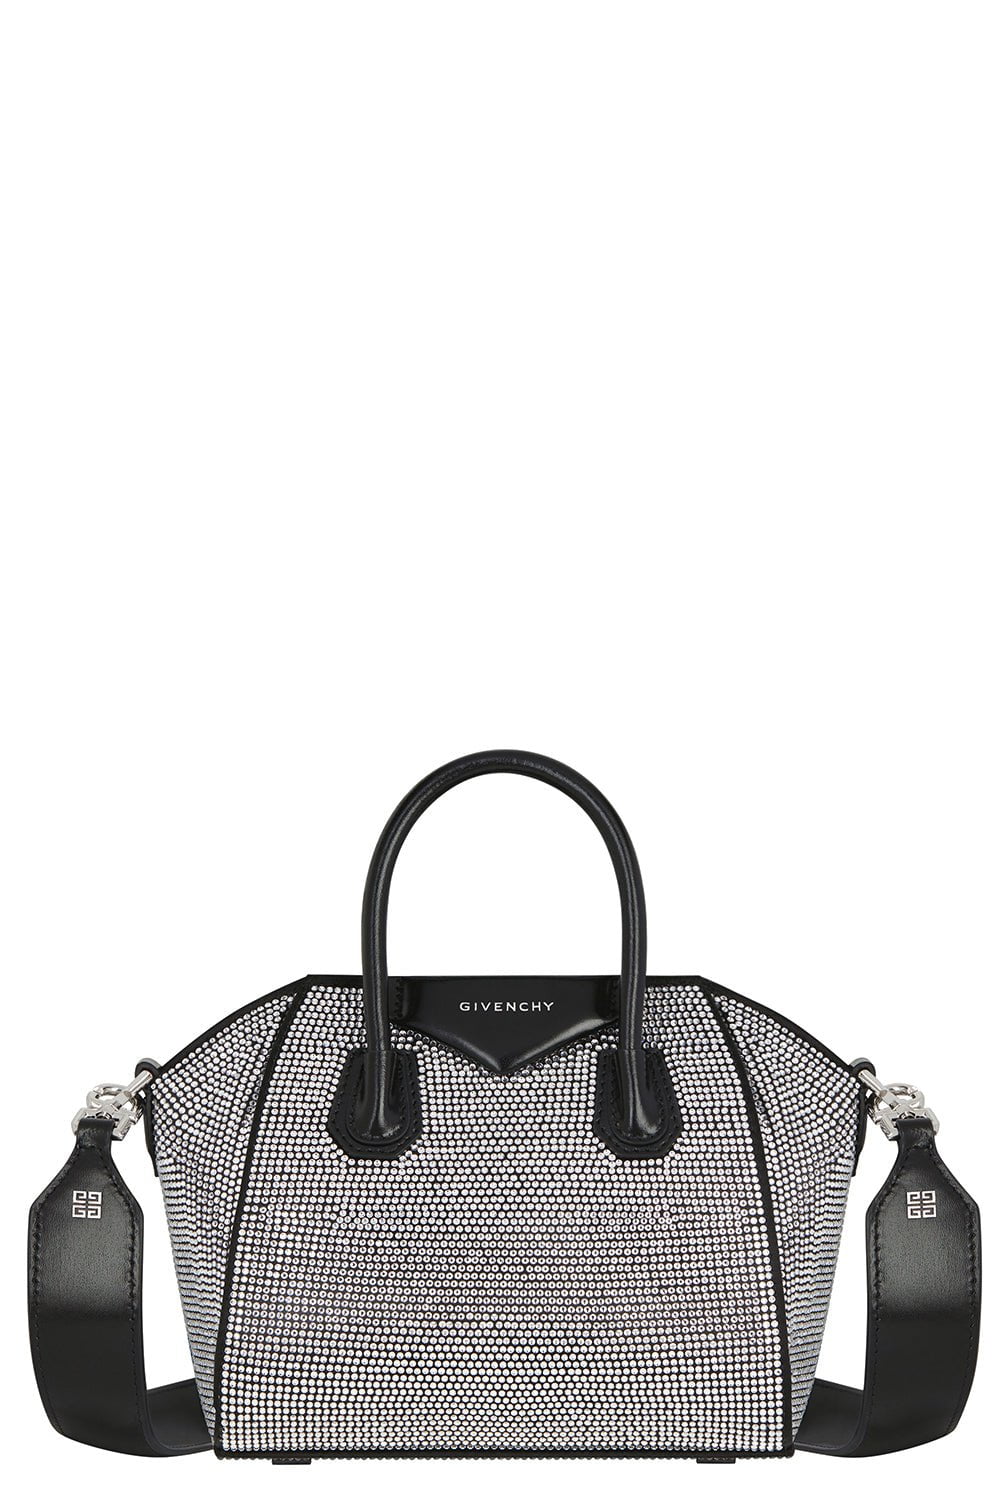 Givenchy Antigona Micro Leather Tote Bag in Black